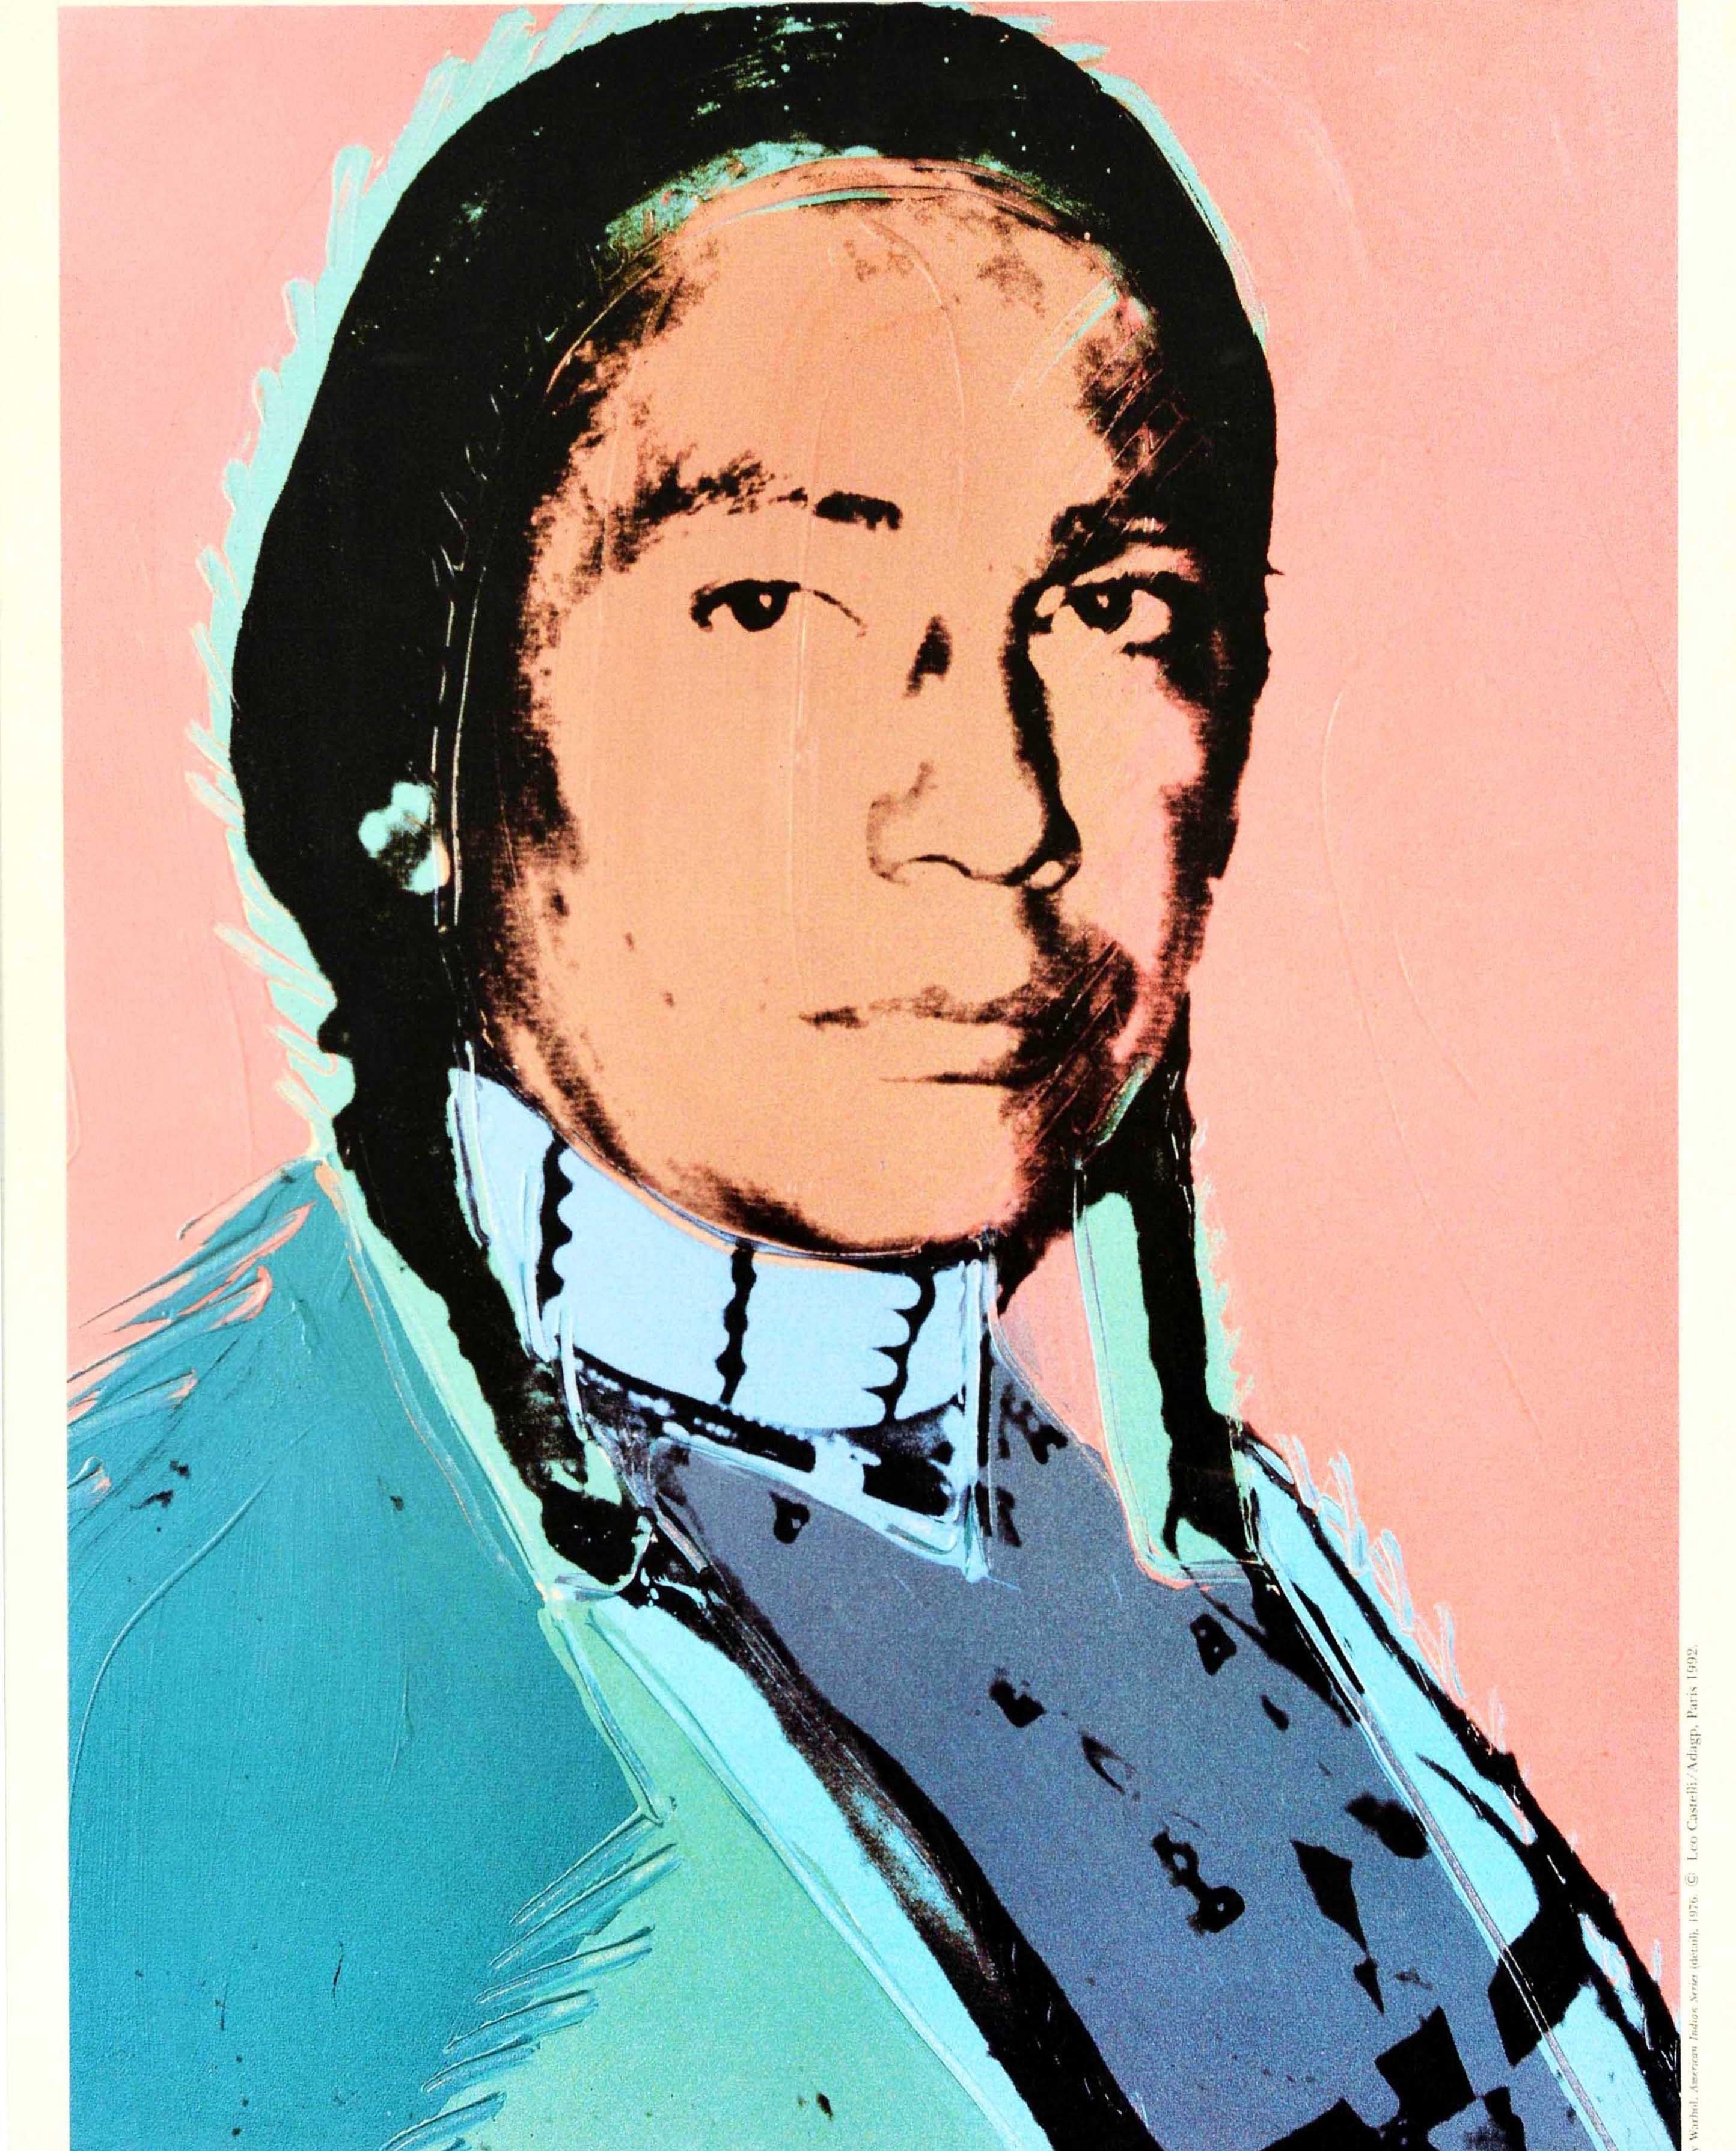 Affiche publicitaire vintage originale pour L'art des Etats-Unis / The Art of The United States, présentant un portrait Pop Art coloré de l'Américain Russell Means en costume traditionnel, réalisé par le célèbre artiste Andy Warhol (1928-1987).